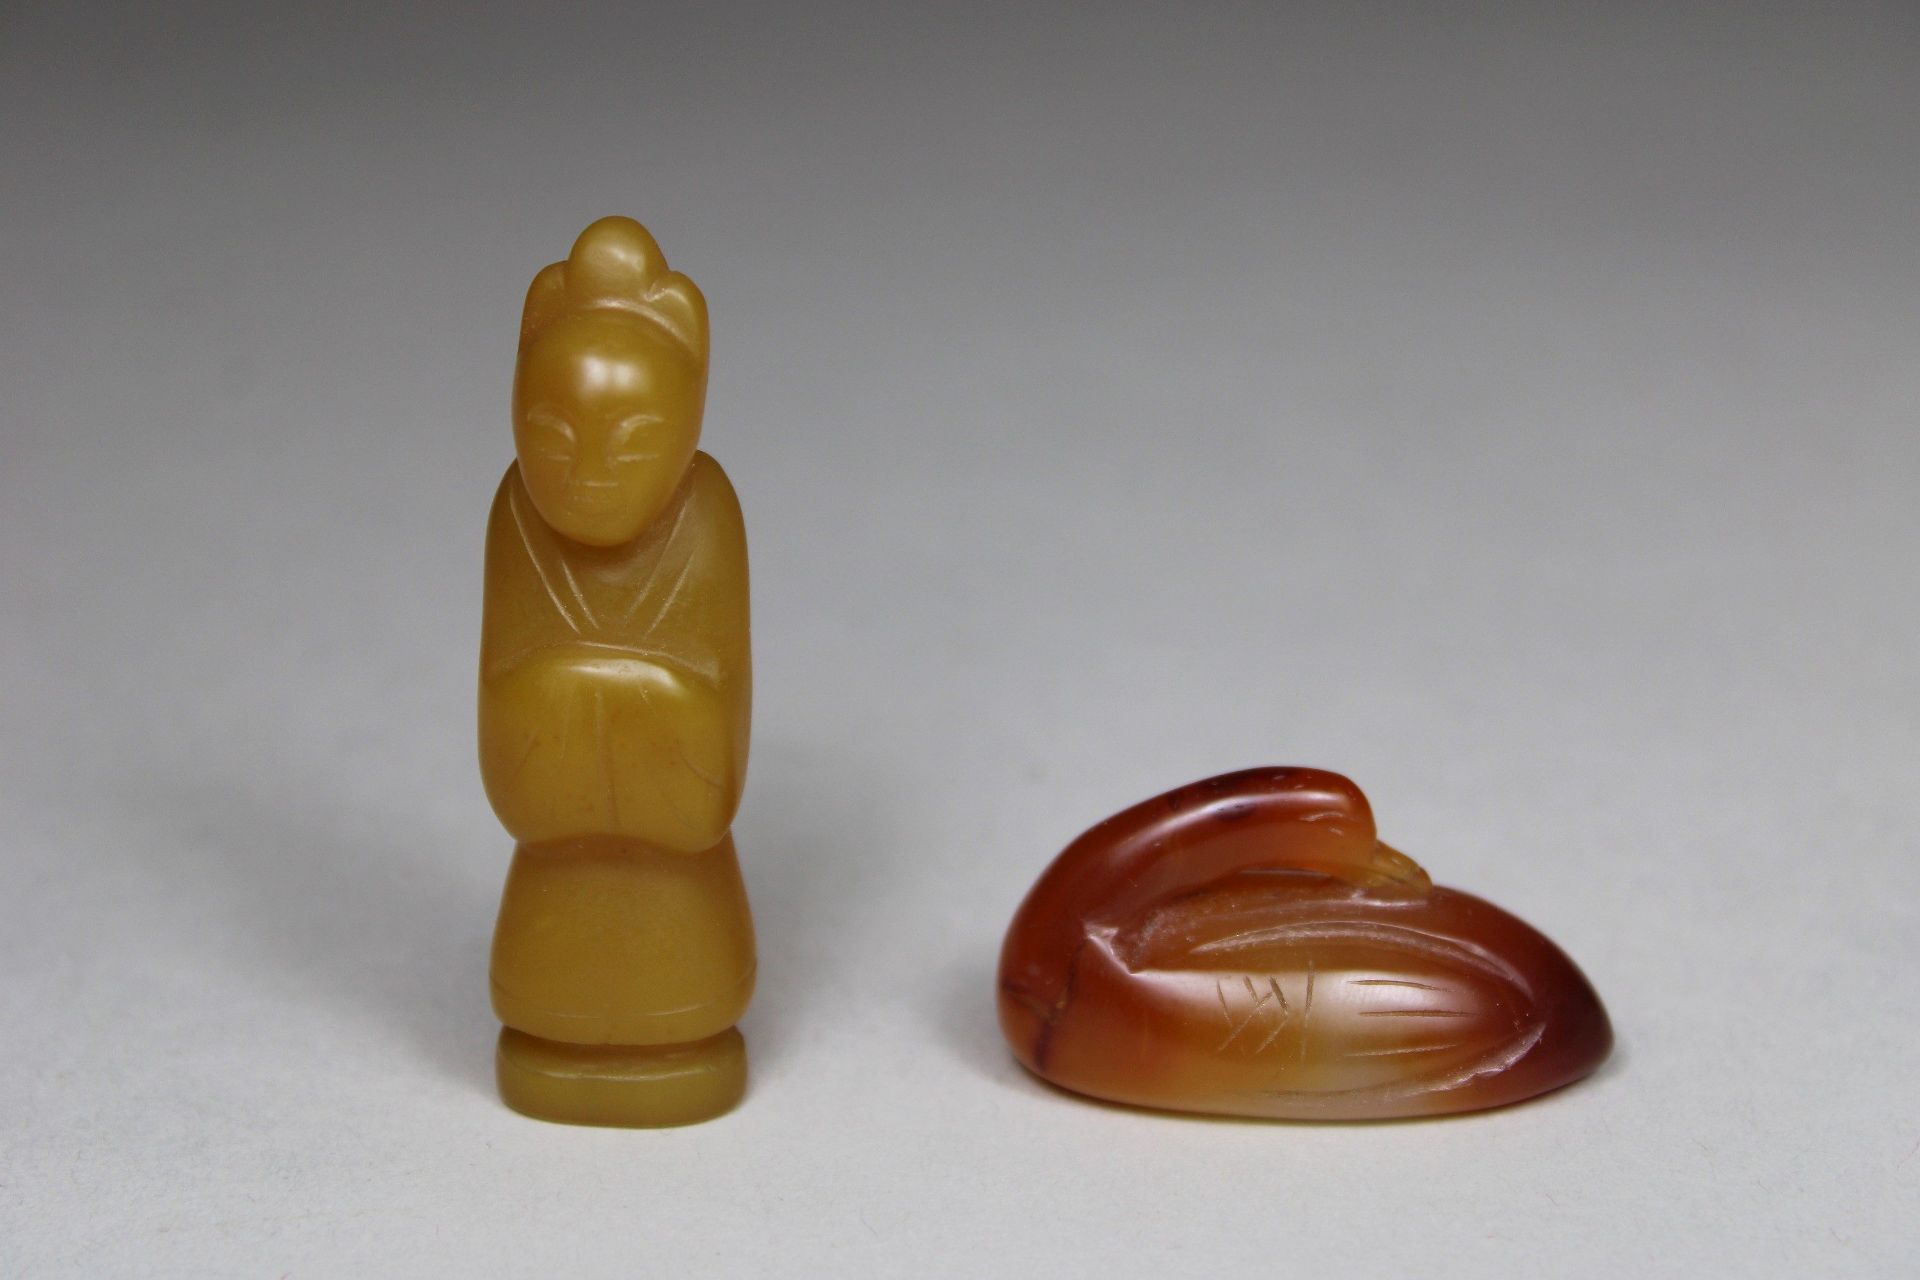 Vier Schnitzereien, China, 1 Beamter aus gelben Jade, H.: 5,5 cm, 1 Ente aus Rote-Achat, L.: 3,9 cm - Bild 2 aus 4